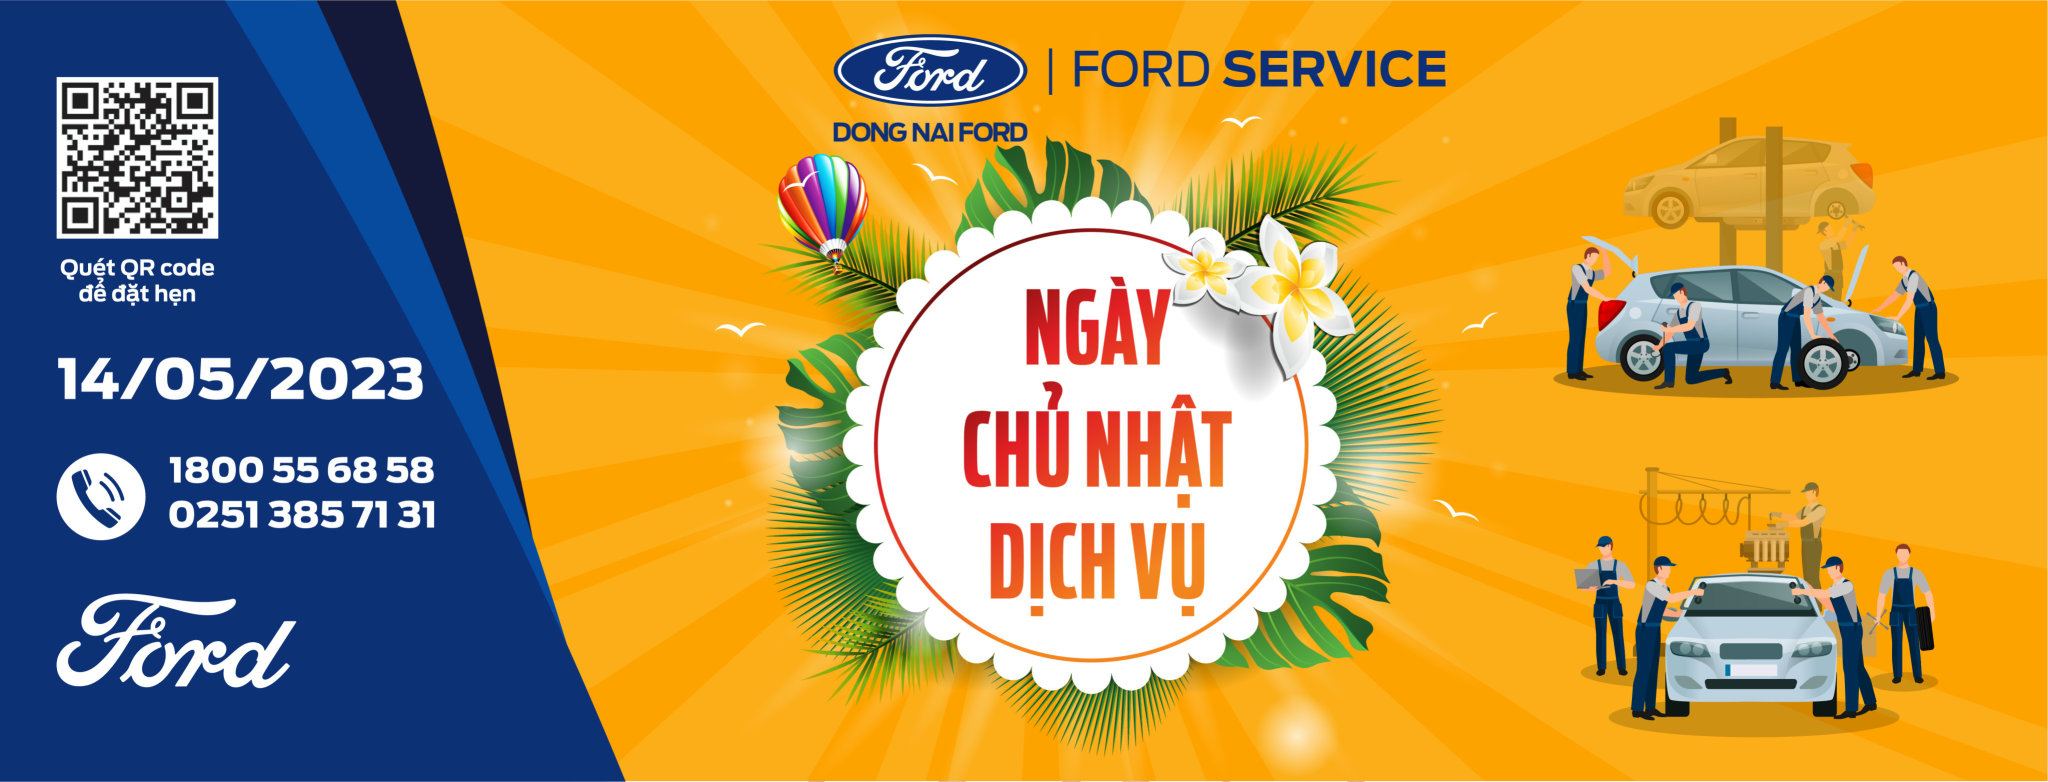 j16354eh 1 - Ford Đồng Nai